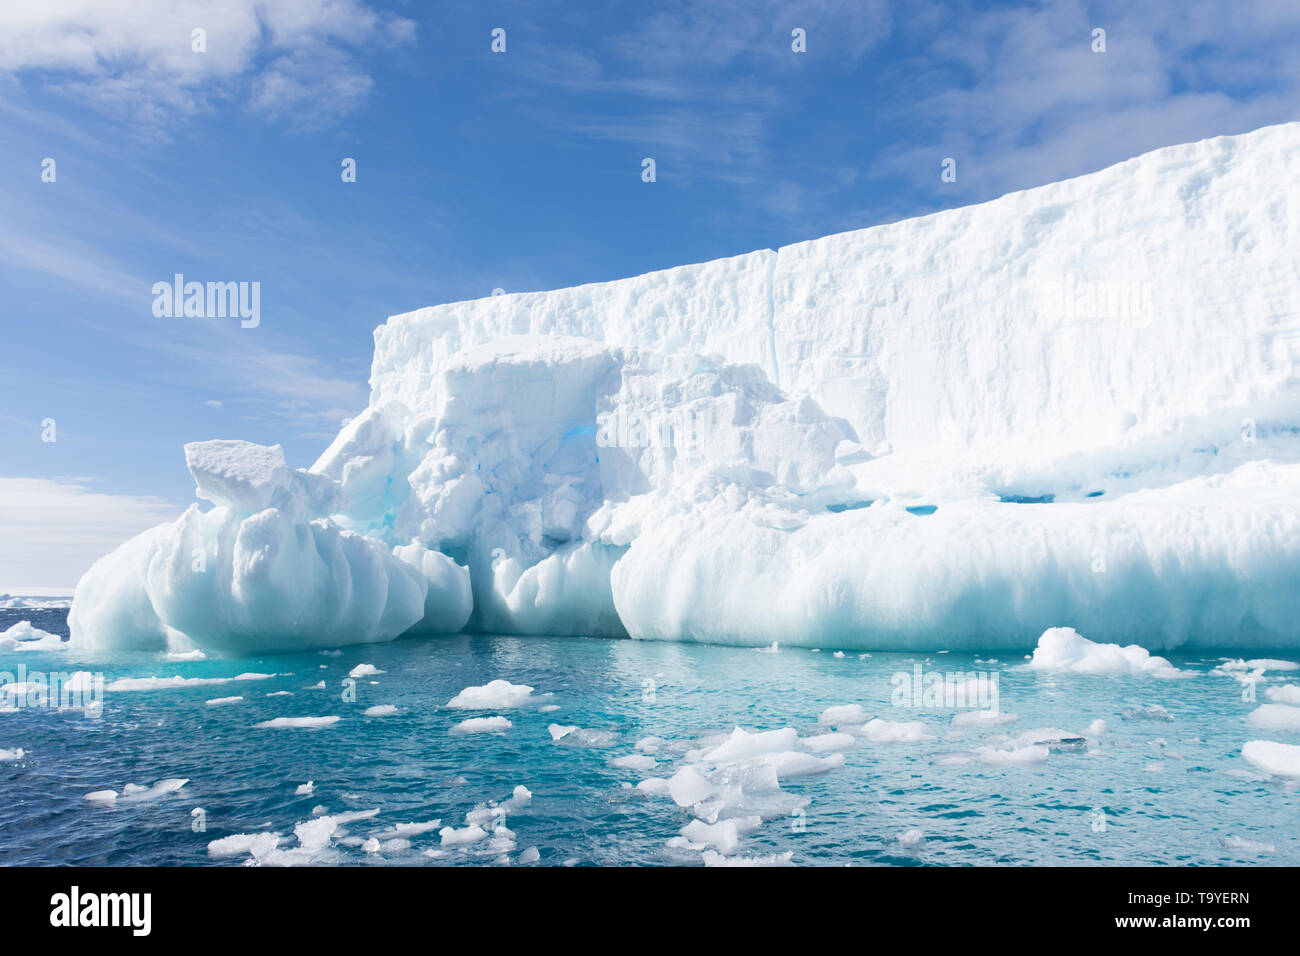 Snowy White iceberg flottant dans l'eau turquoise ou bleu aigue-marine de l'océan Atlantique Sud dans l'Antarctique avec ciel bleu et nuages minces au-dessus. Banque D'Images